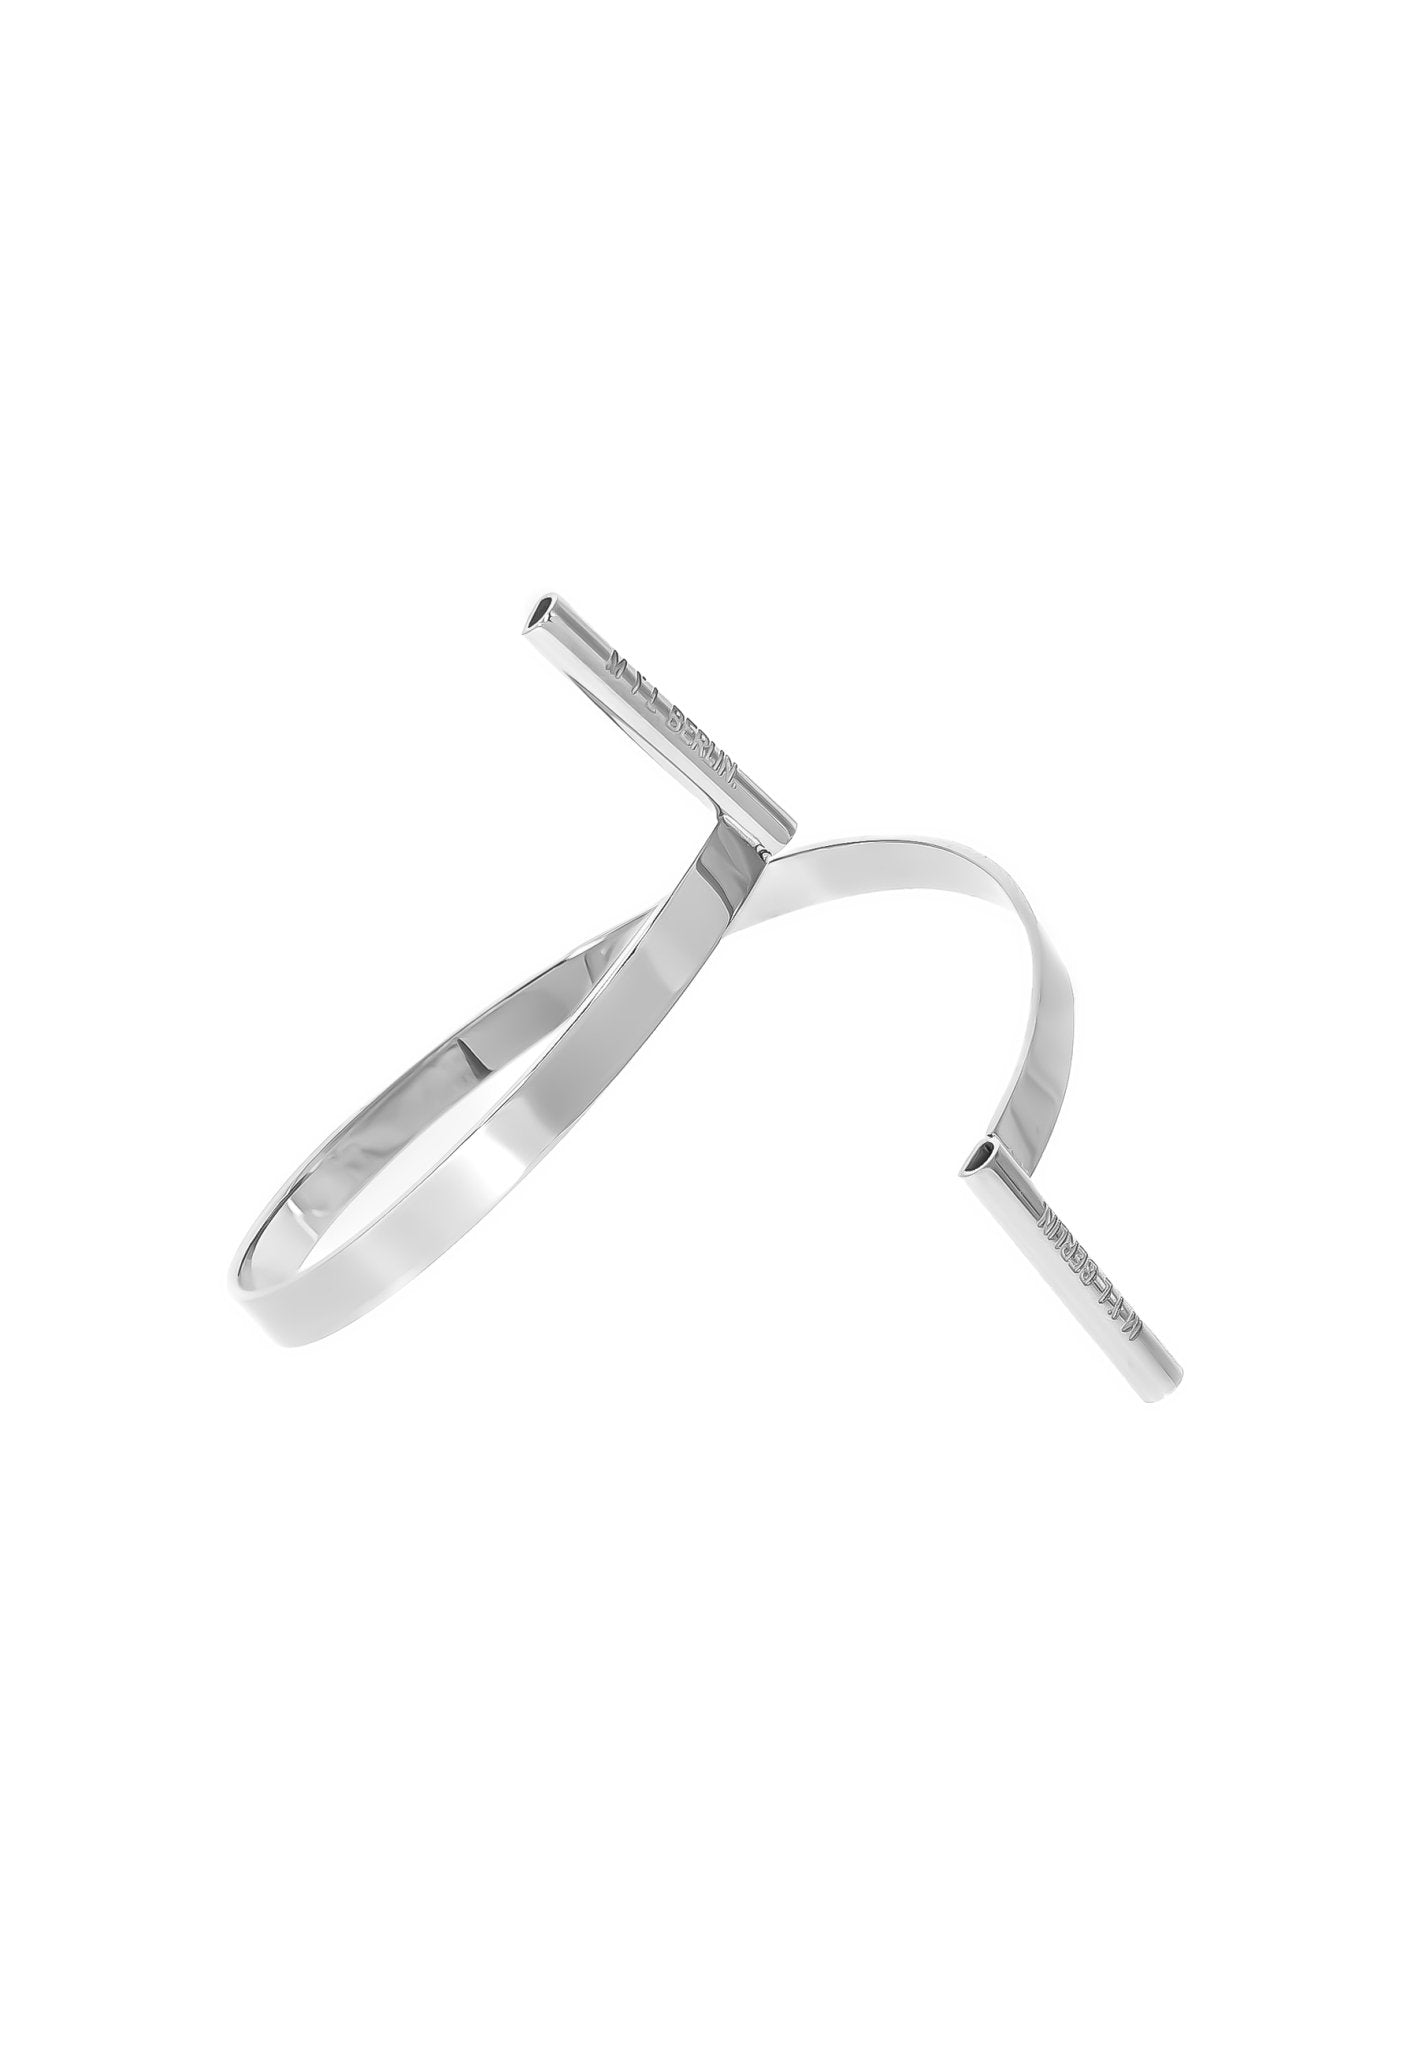 Flexible Upper Arm Bracelet “Serpentine” - MYL BERLIN - 4260654112665 - 4260654112665